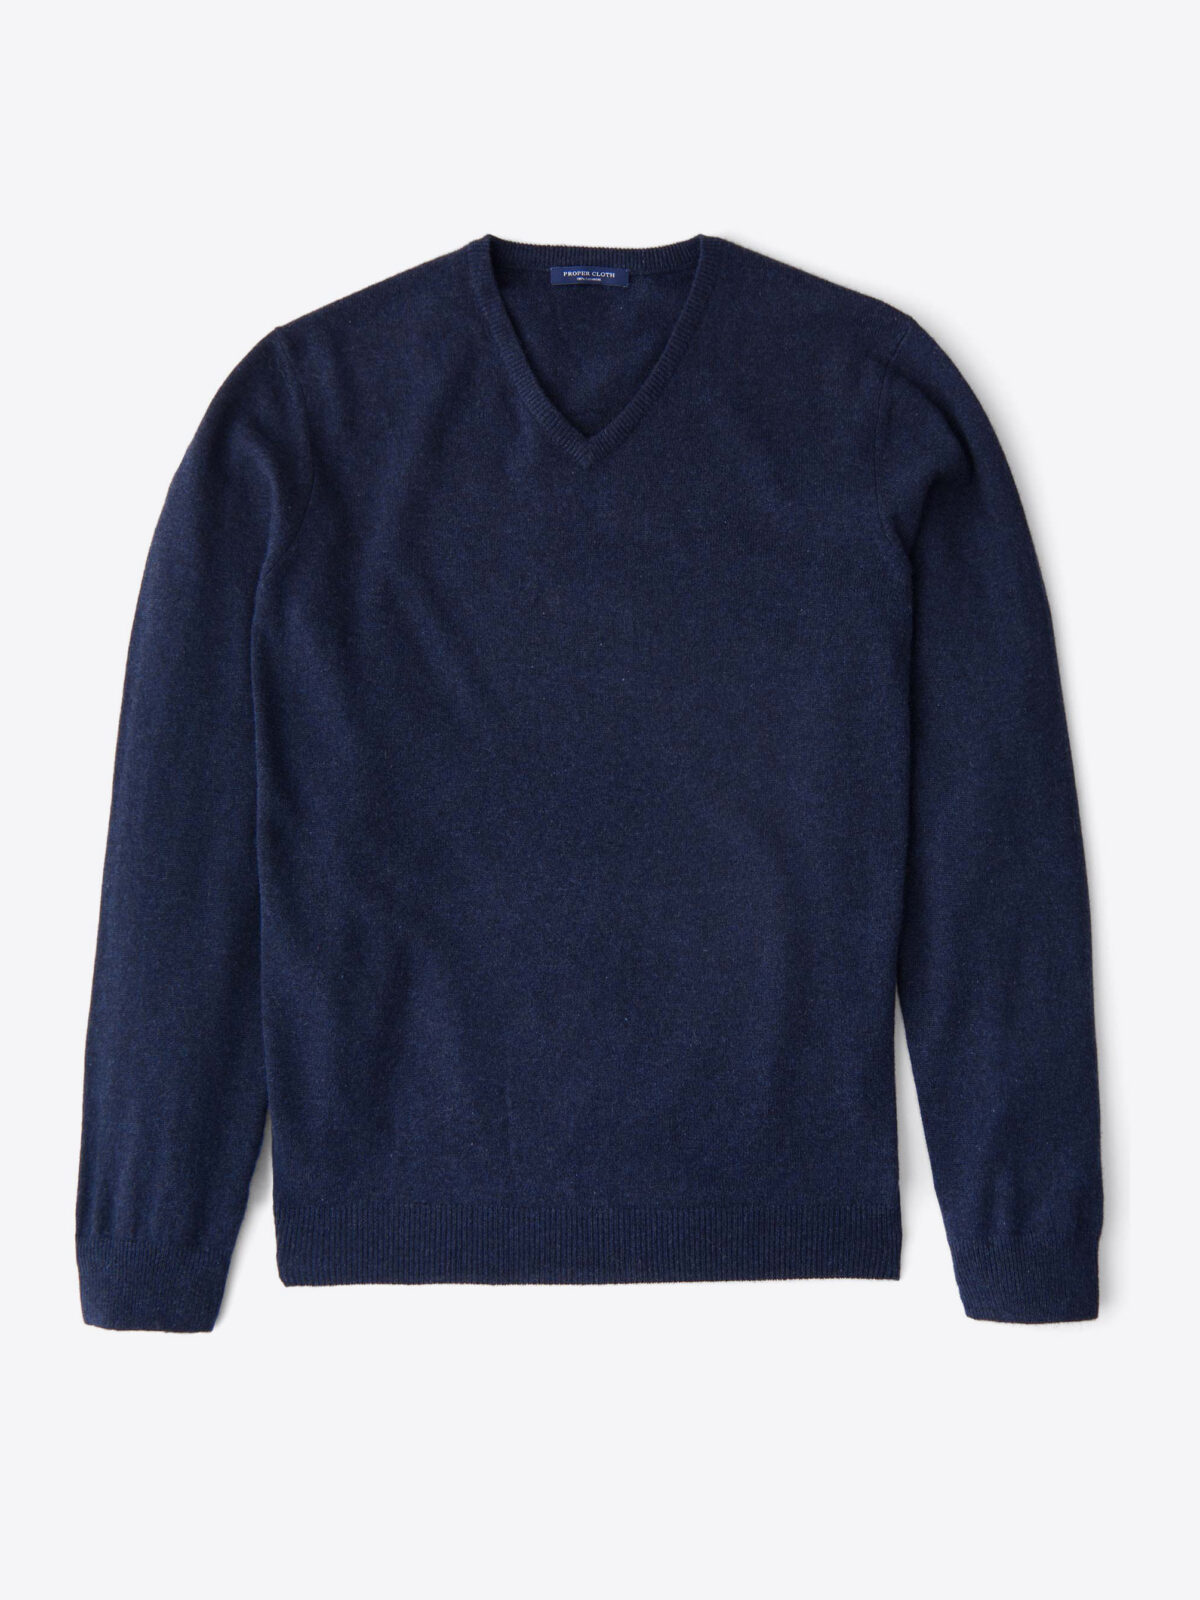 Navy Melange Cashmere V-Neck Sweater